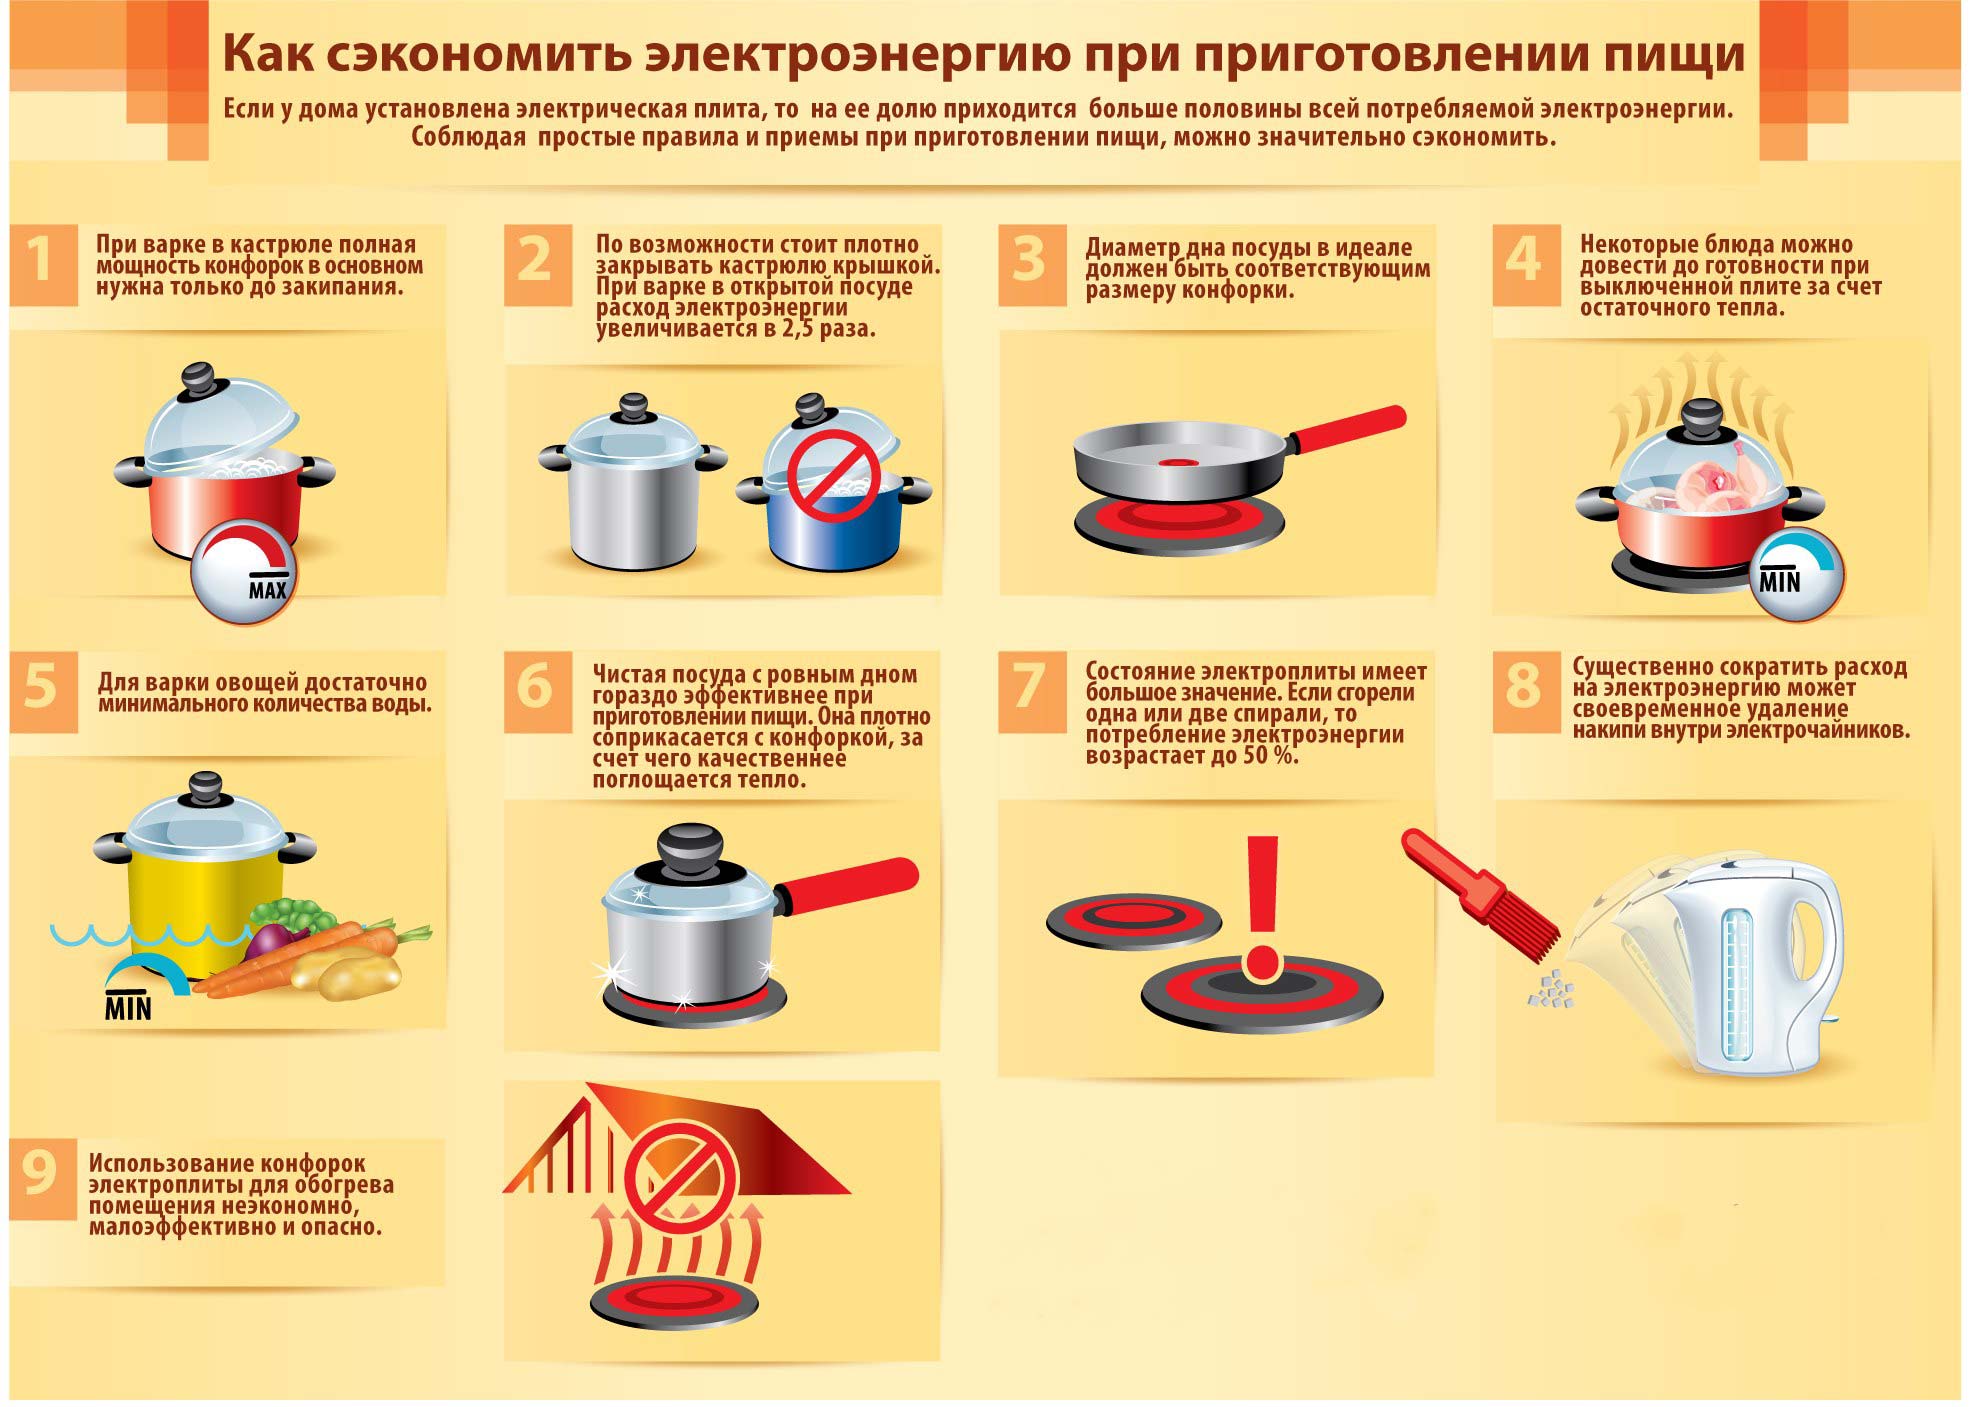 Советы по экономии при приготовлении пищи (1).jpg